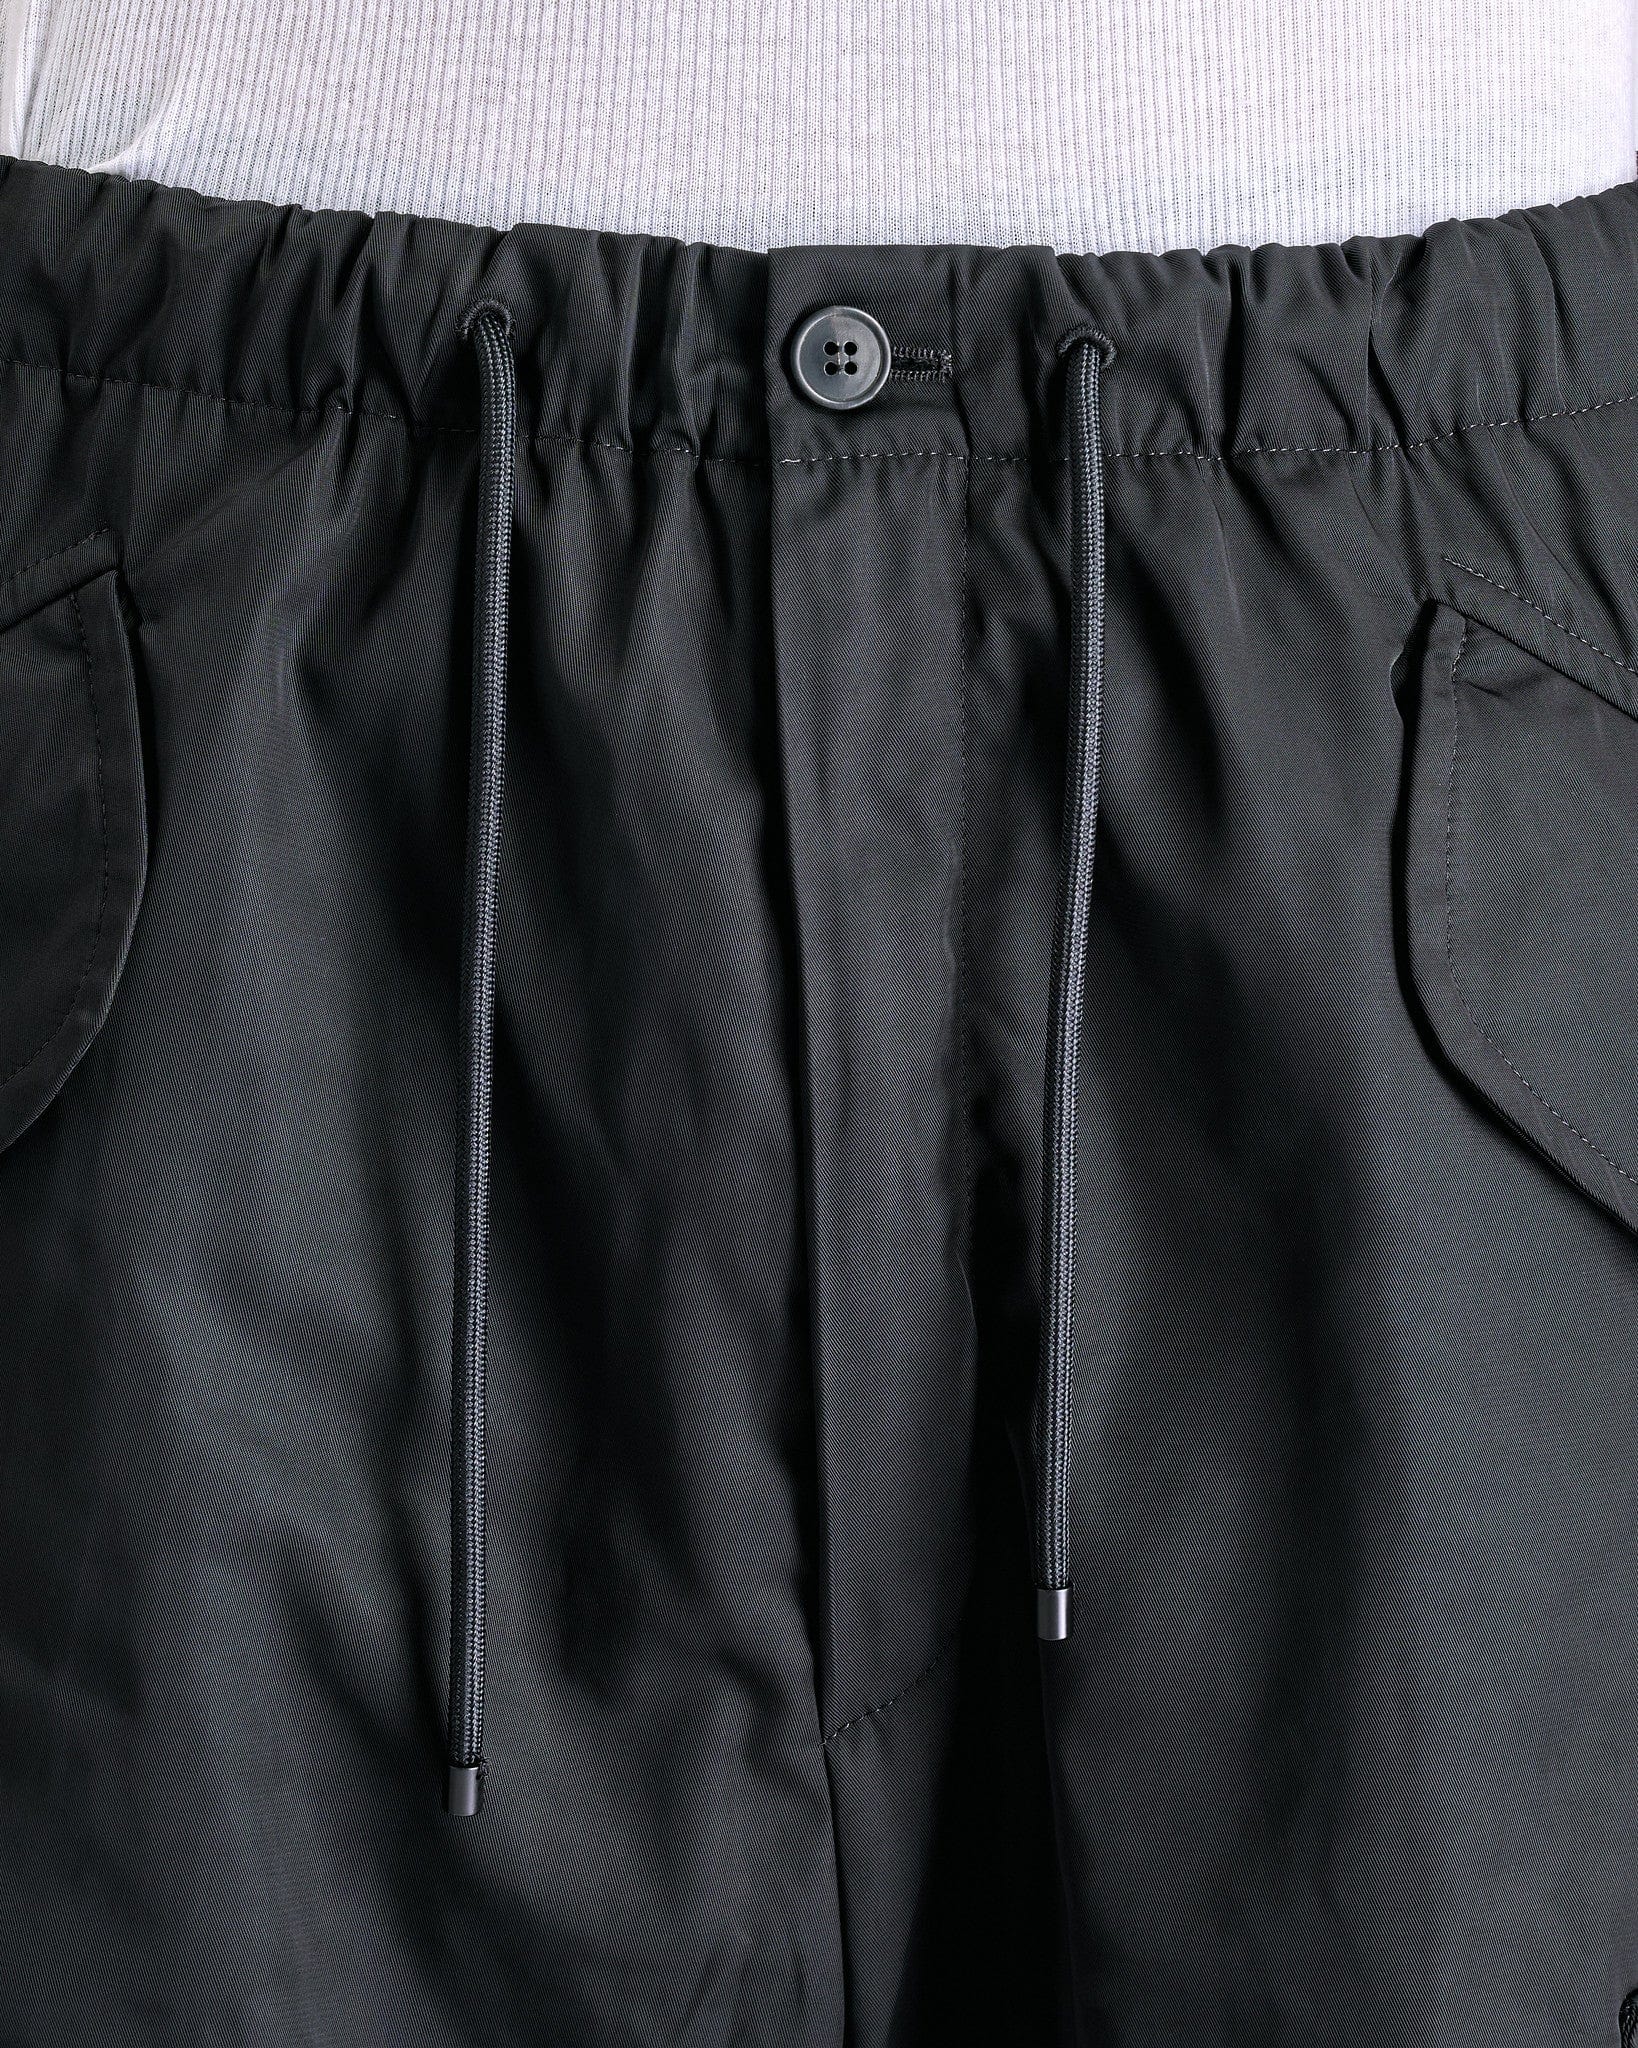 Dries Van Noten Men's Pants Pentin Pants in Black